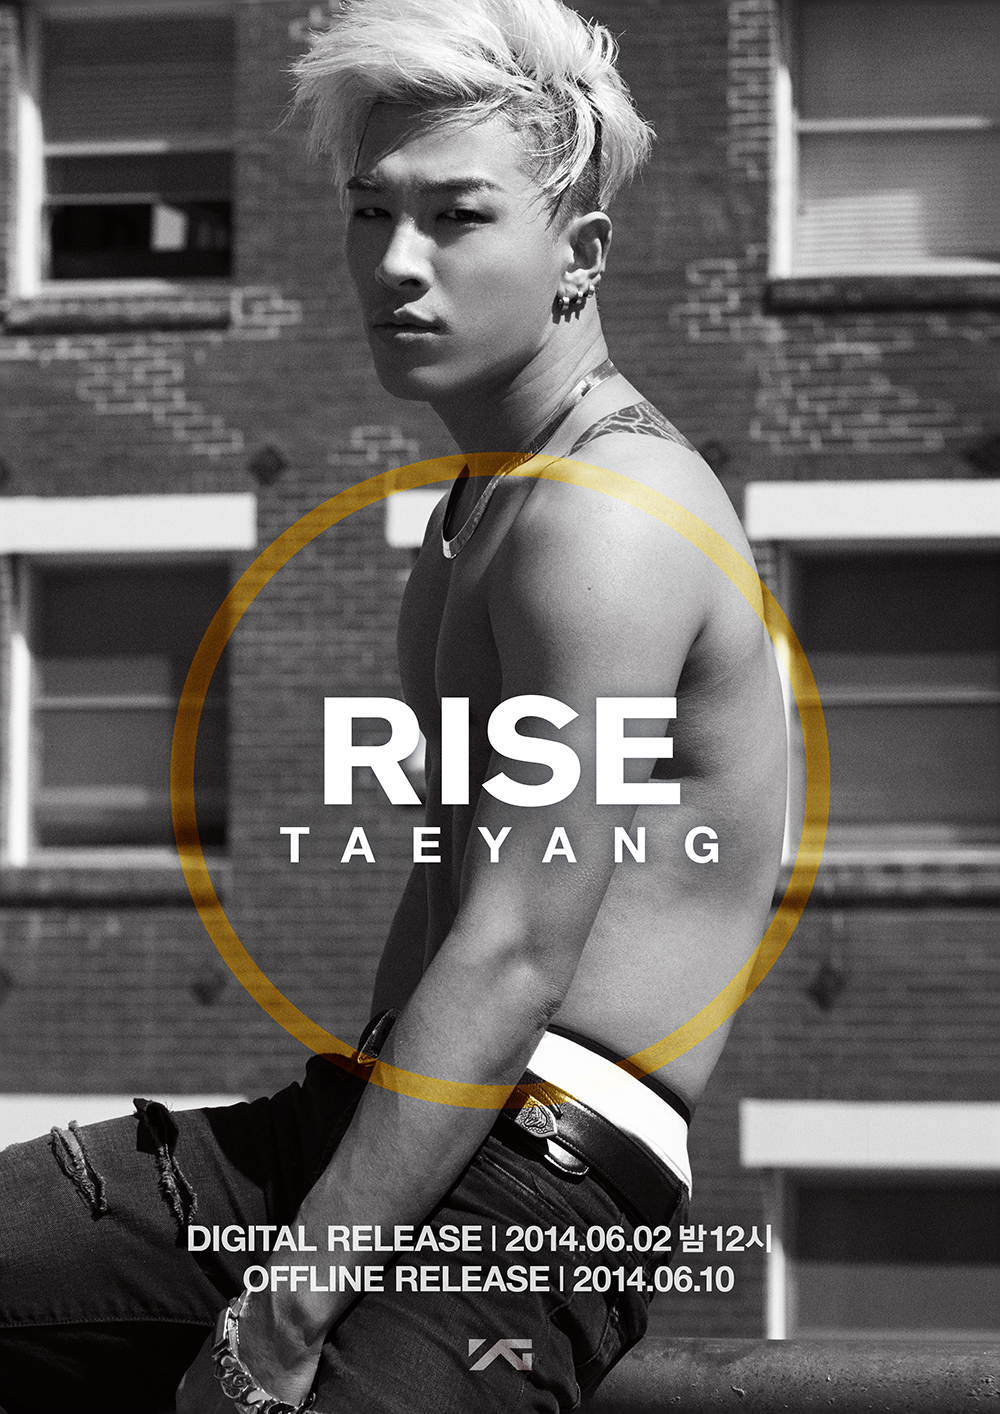 تاي يانغ كشف عن الصور التشويقية الخاصة بعودته بألبومه المنفرد RISE*_* Taeyang-poster-second-1